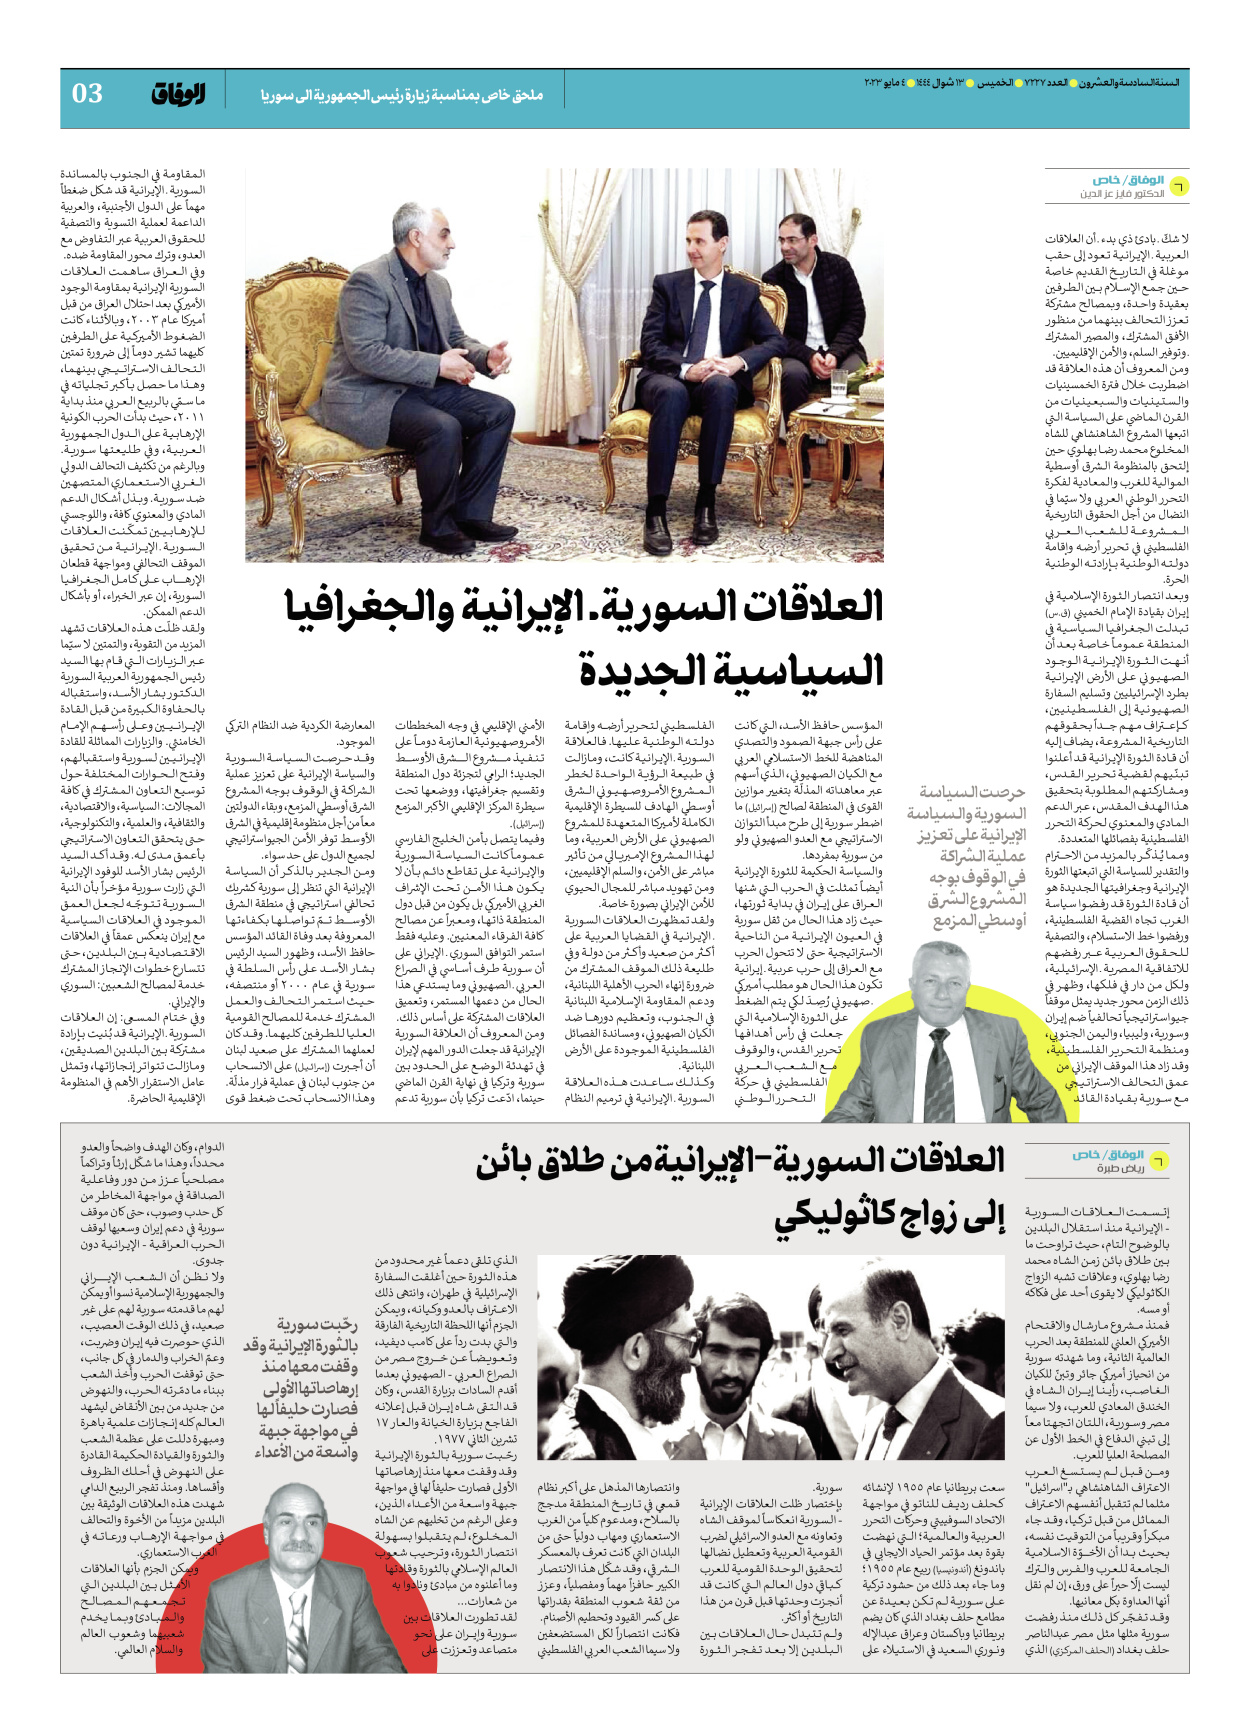 صحیفة ایران الدولیة الوفاق - ملحق بمناسبة زيارة رئيس الجمهورية الى سوريا - ٠٤ مايو ٢٠٢٣ - الصفحة ۳